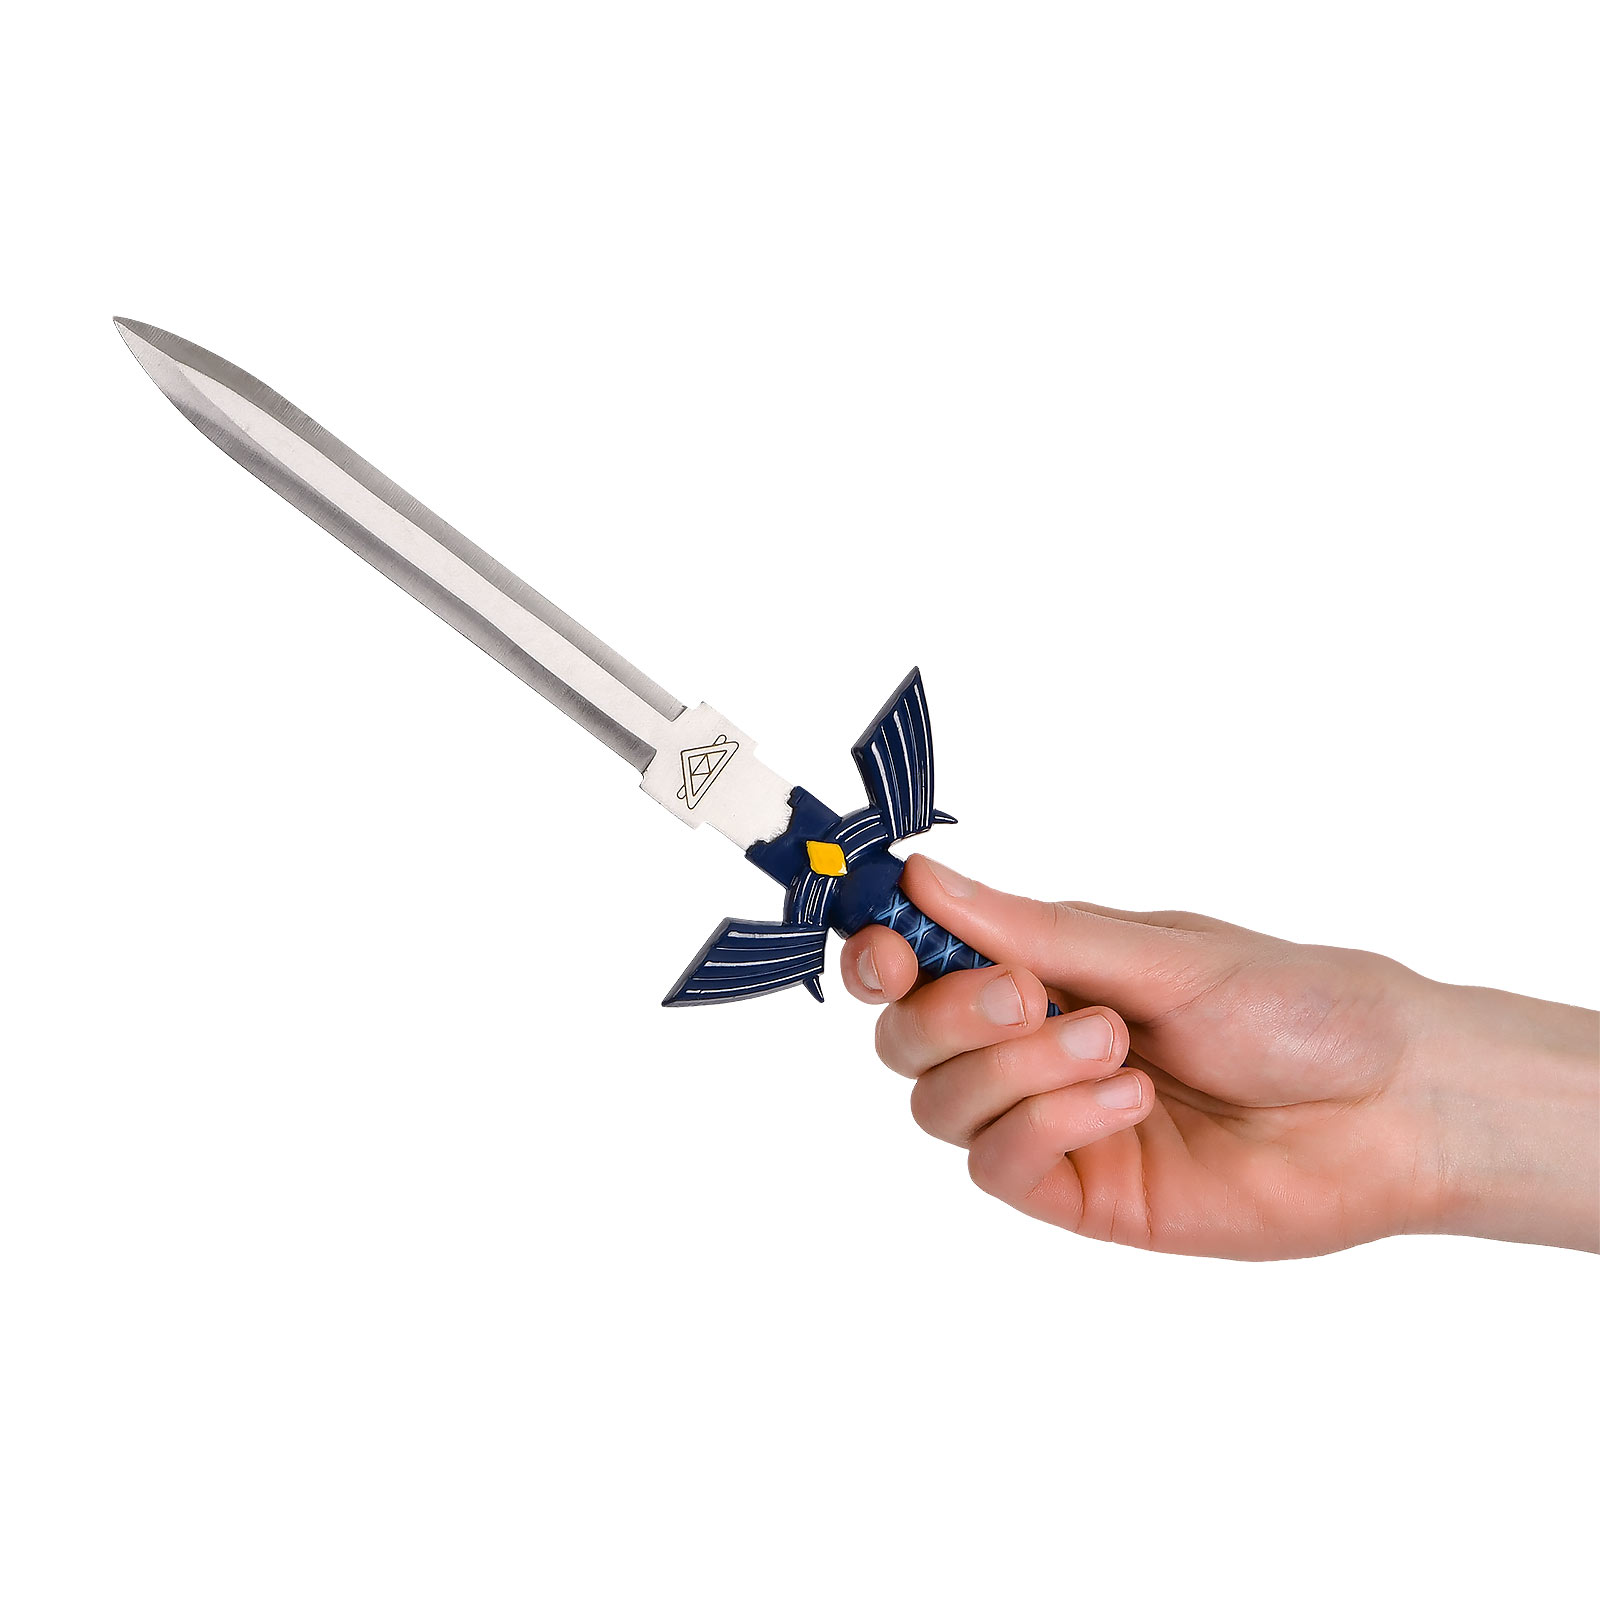 Réplique miniature de l'Epée de Maître avec fourreau pour les fans de Zelda